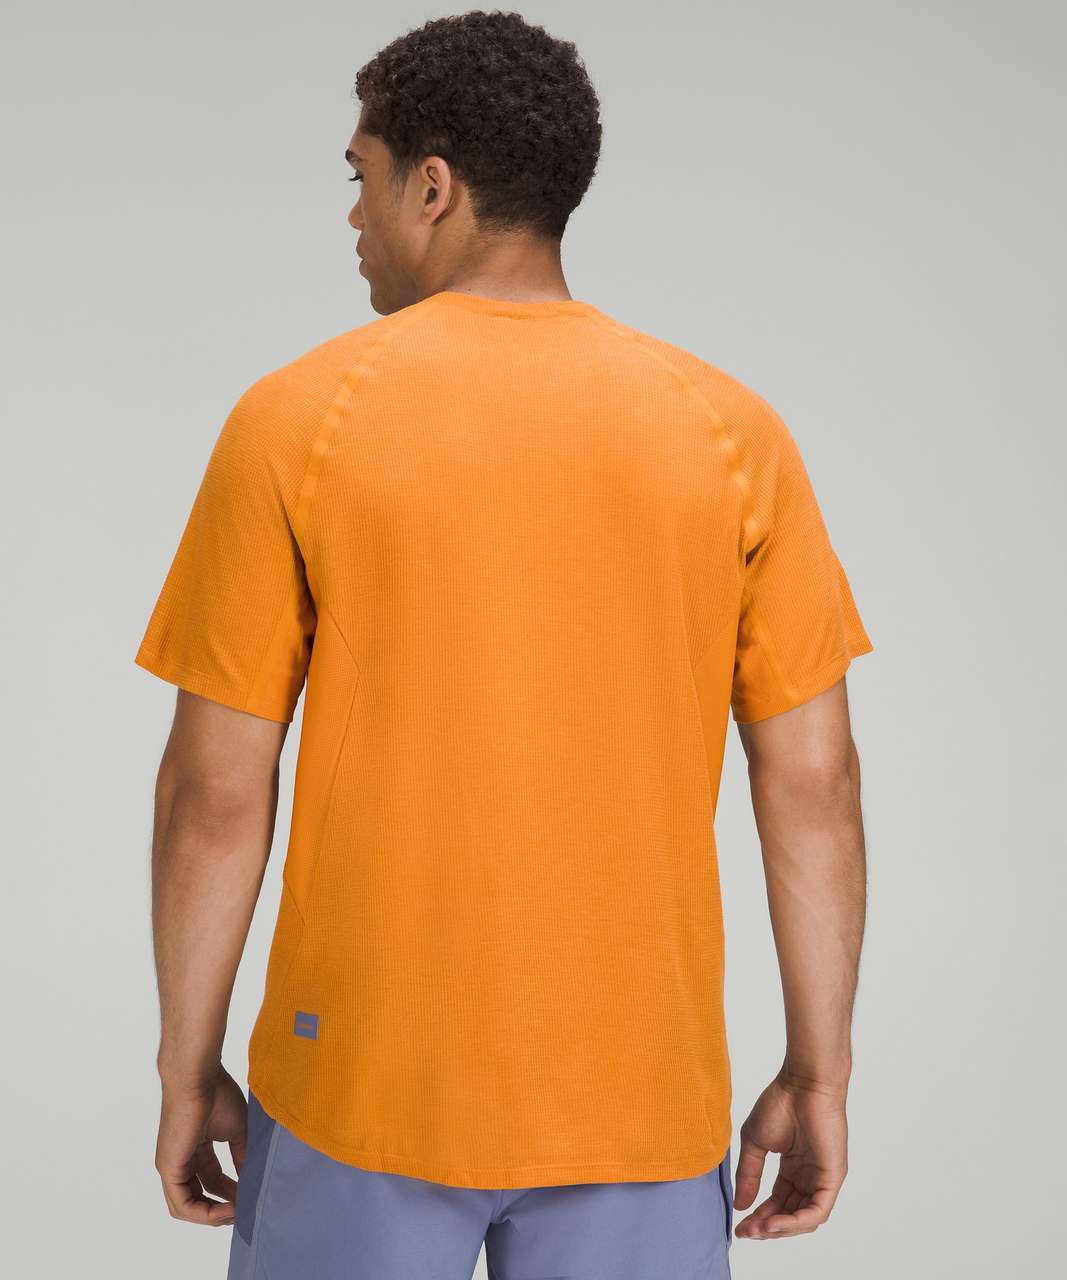 Lululemon Ventilated Hiking Short Sleeve Shirt - Autumn Orange